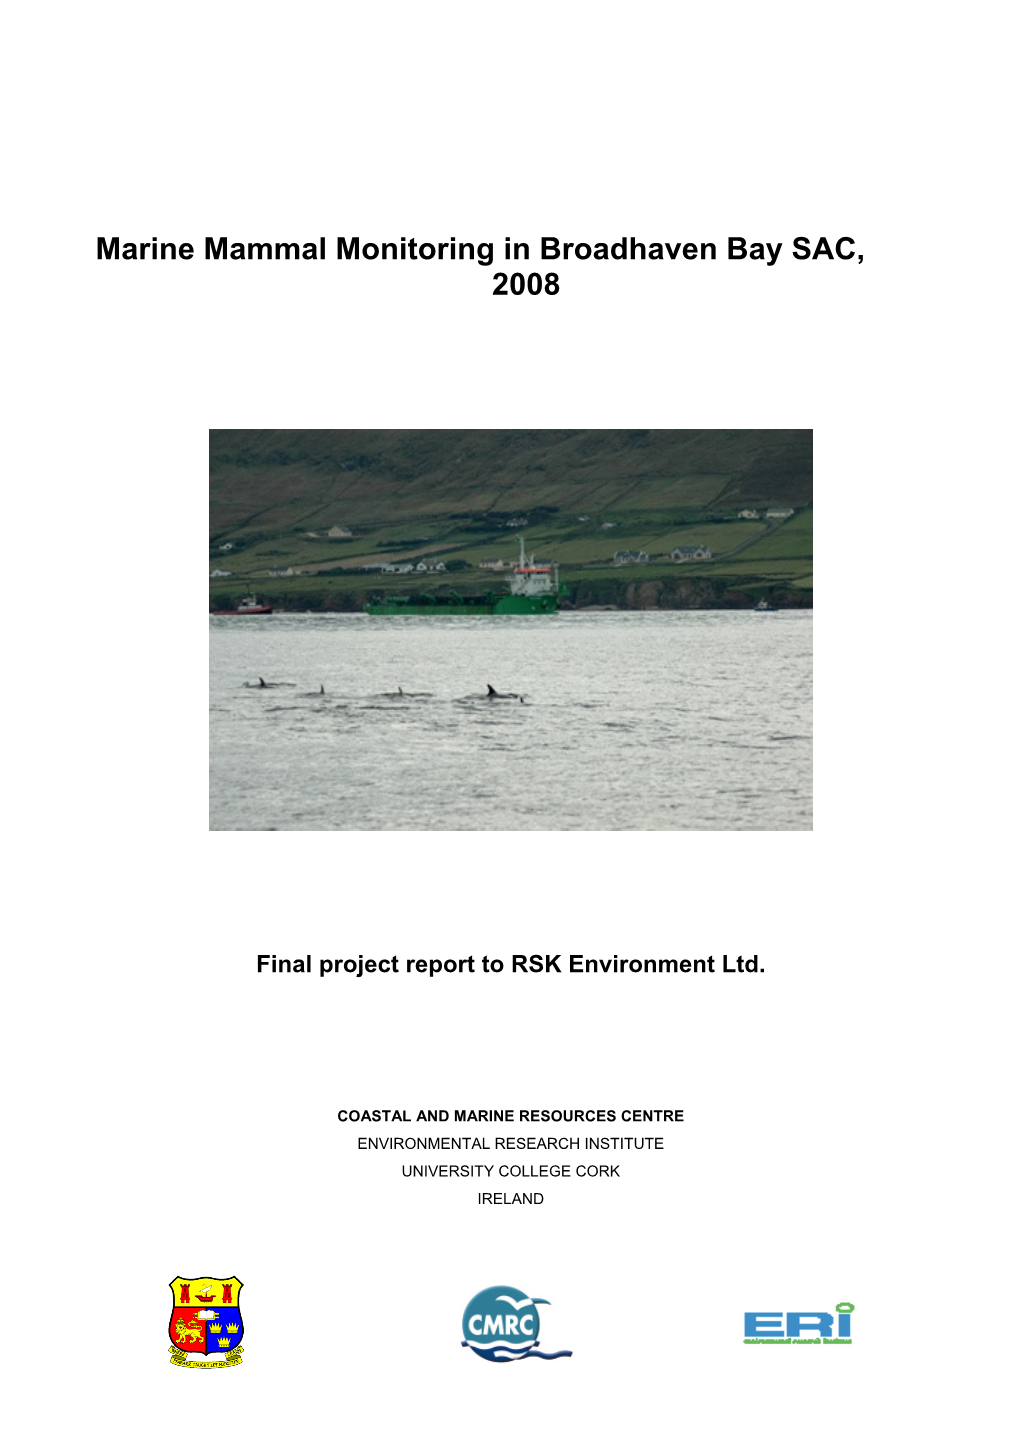 Marine Mammal Monitoring in Broadhaven Bay SAC, 2008